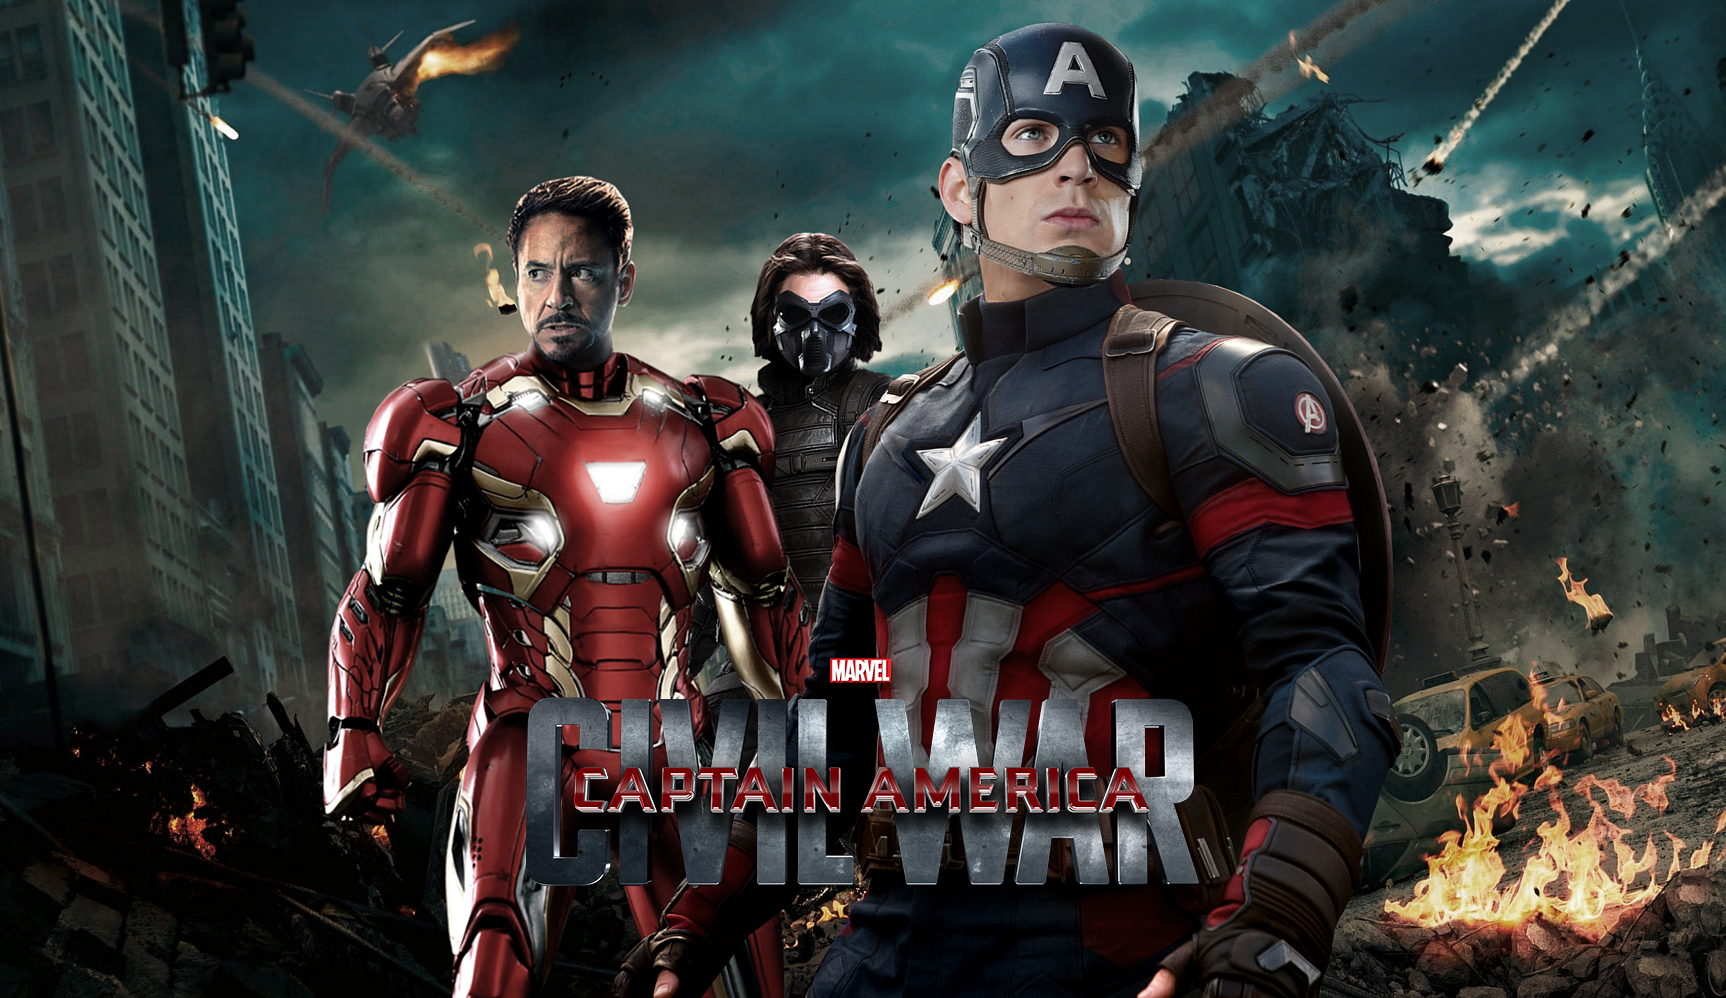 Marvel Studios Releases New Trailer for 'Captain America: Civil War